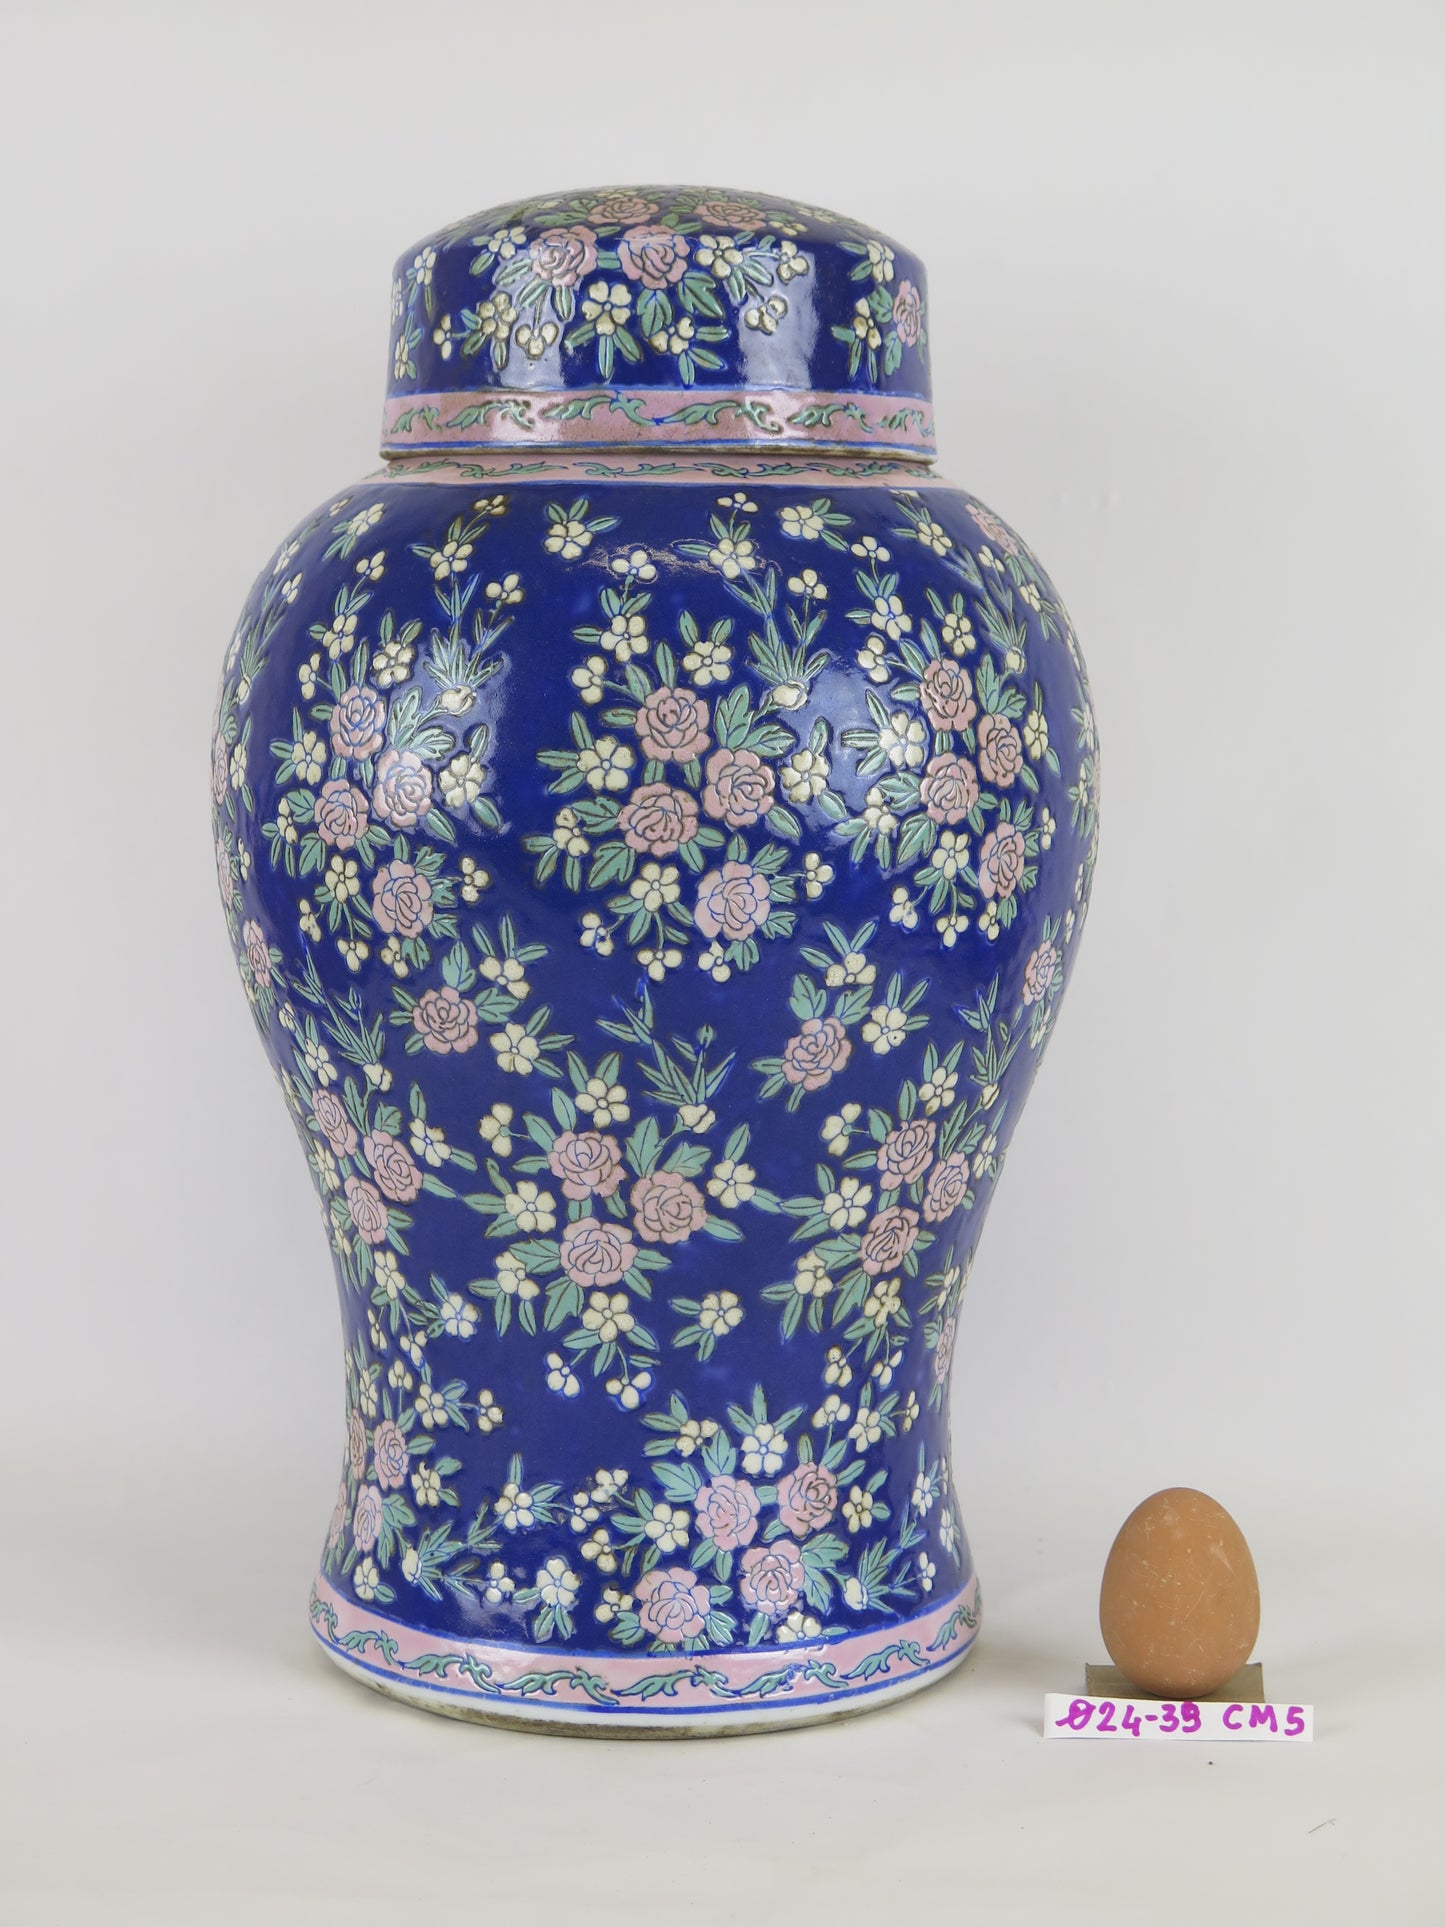 Grande vaso di ceramica smaltata vintage dipinto a mano con motivi floreali colore blu Cina Asia '900 CM5